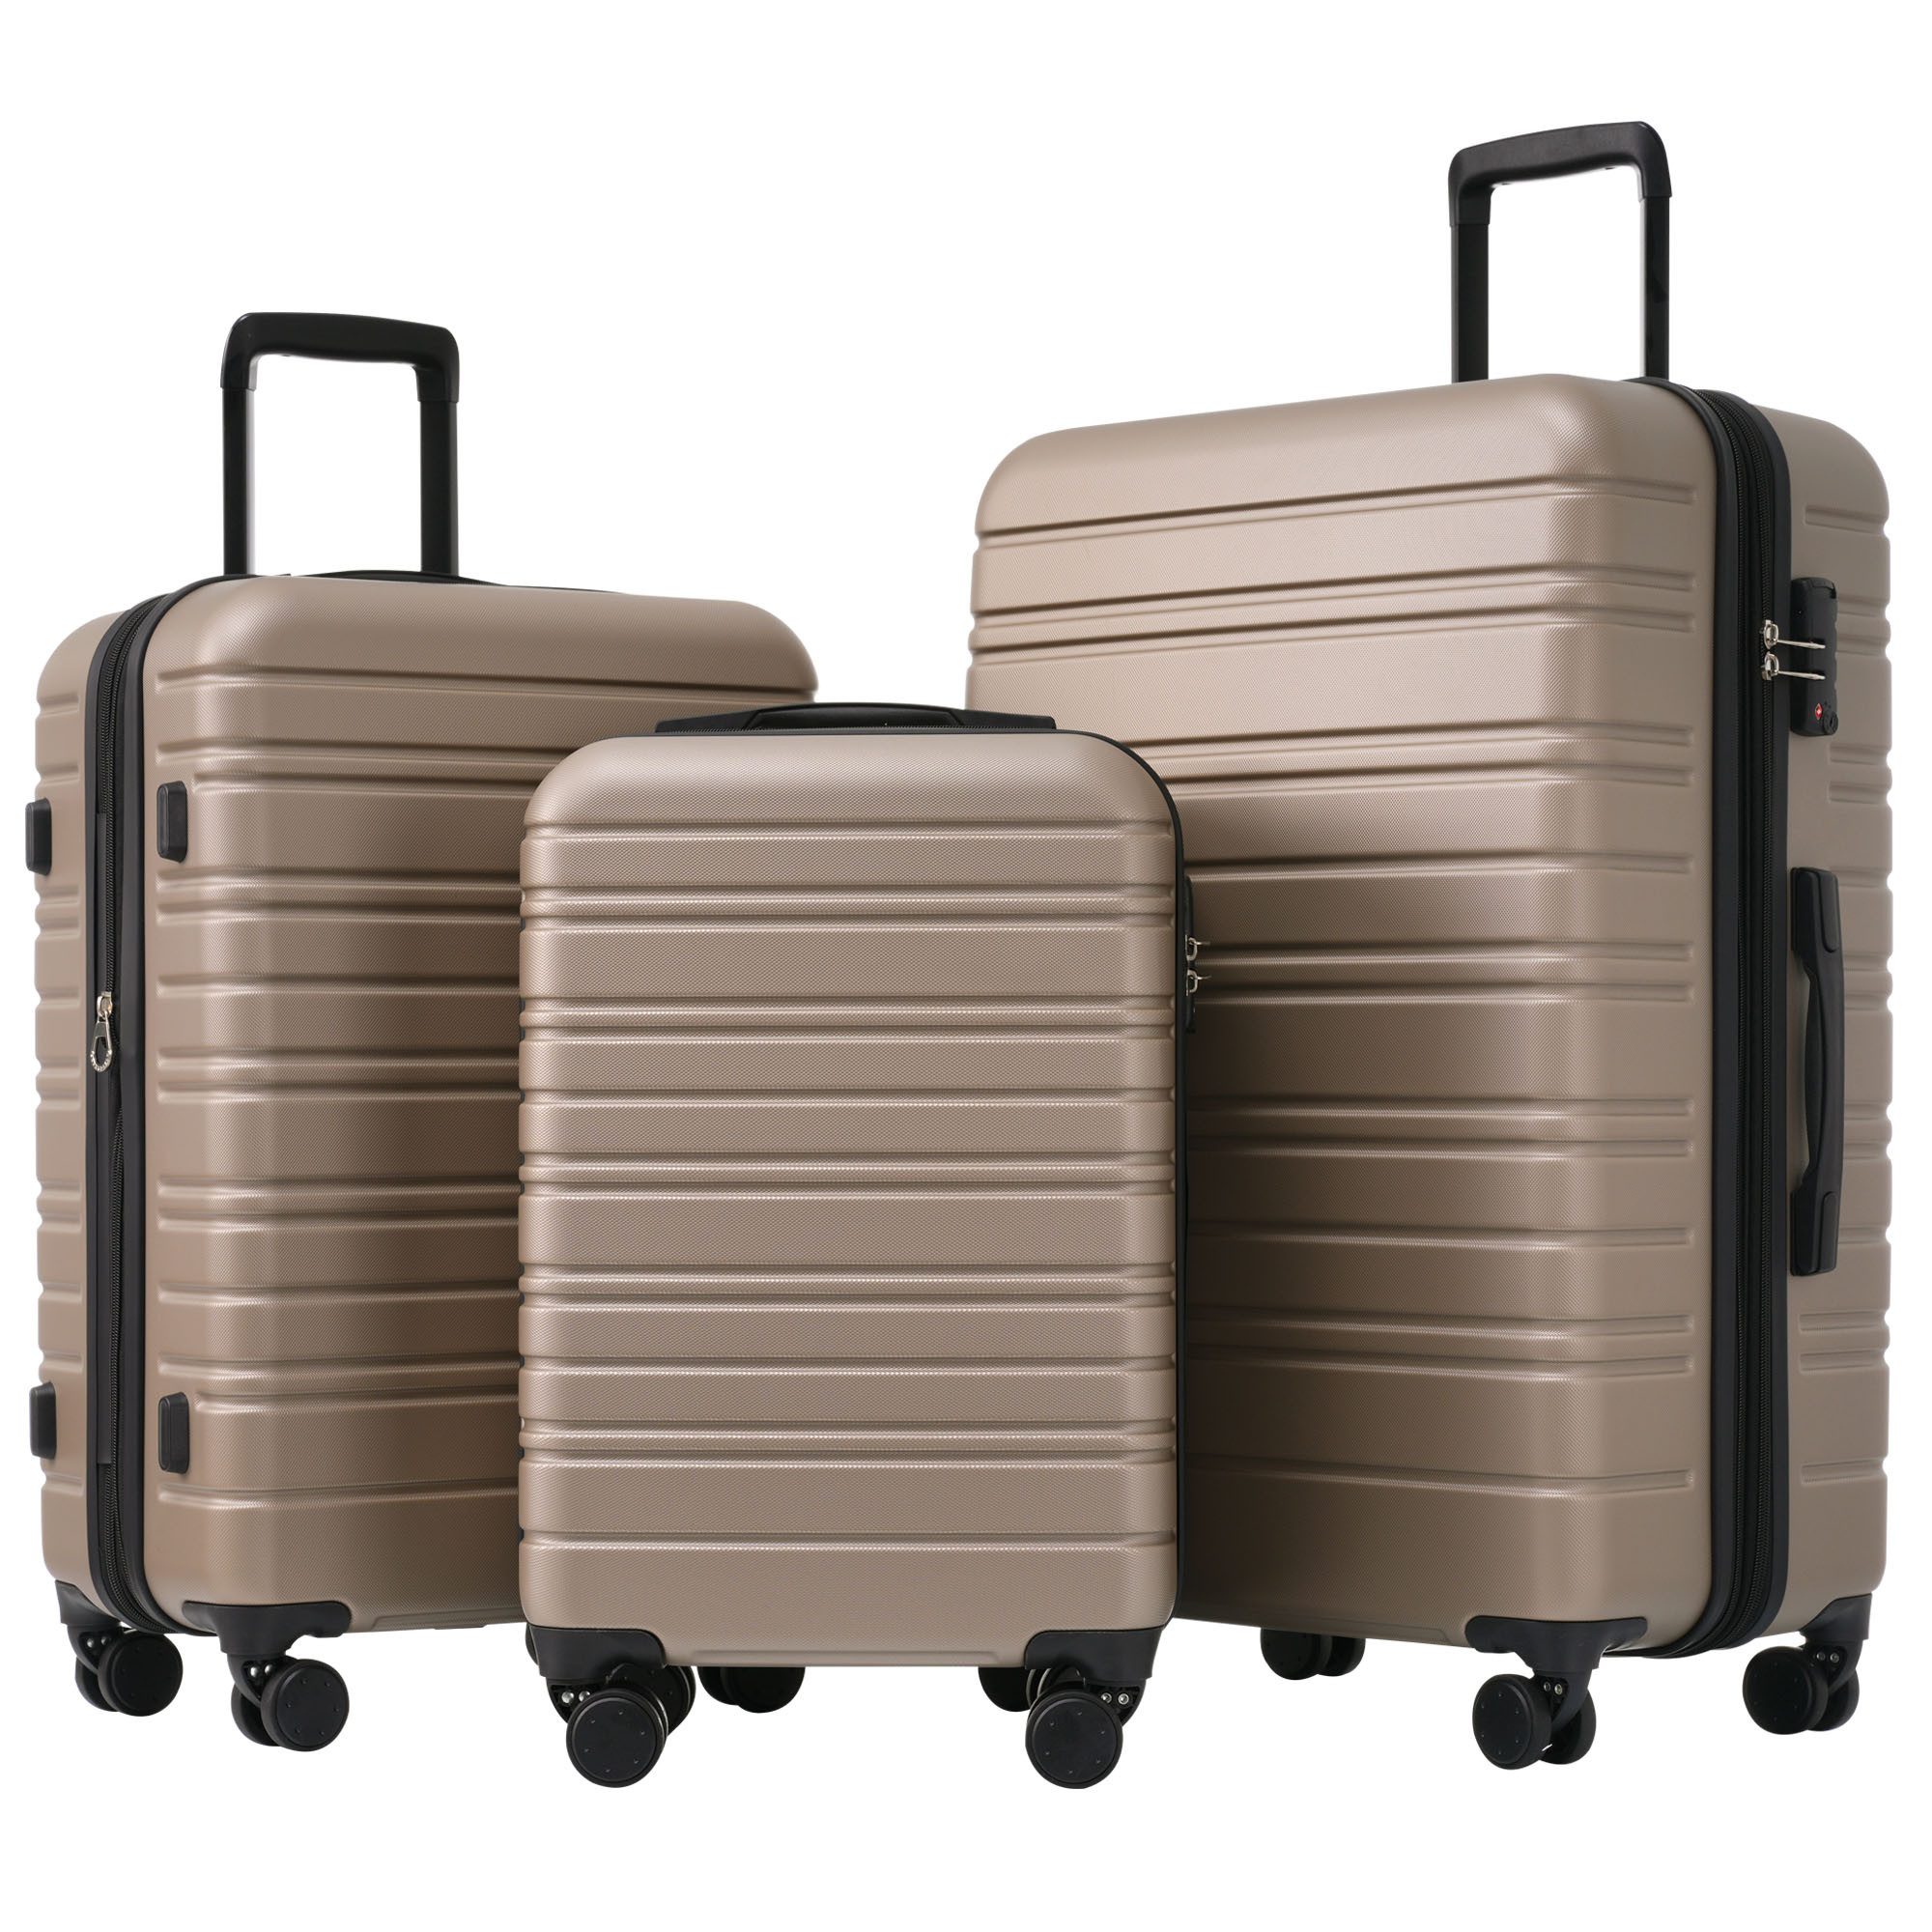 Blusmart Kofferset Hartschalenkoffer Set 3-teilig Trolley Set, 4 Rollen, (Hochwertiges ABS-Kofferset, 1 tlg., Robust, leicht und stilvoll), 360° Rollen, mit Zahlenschloss